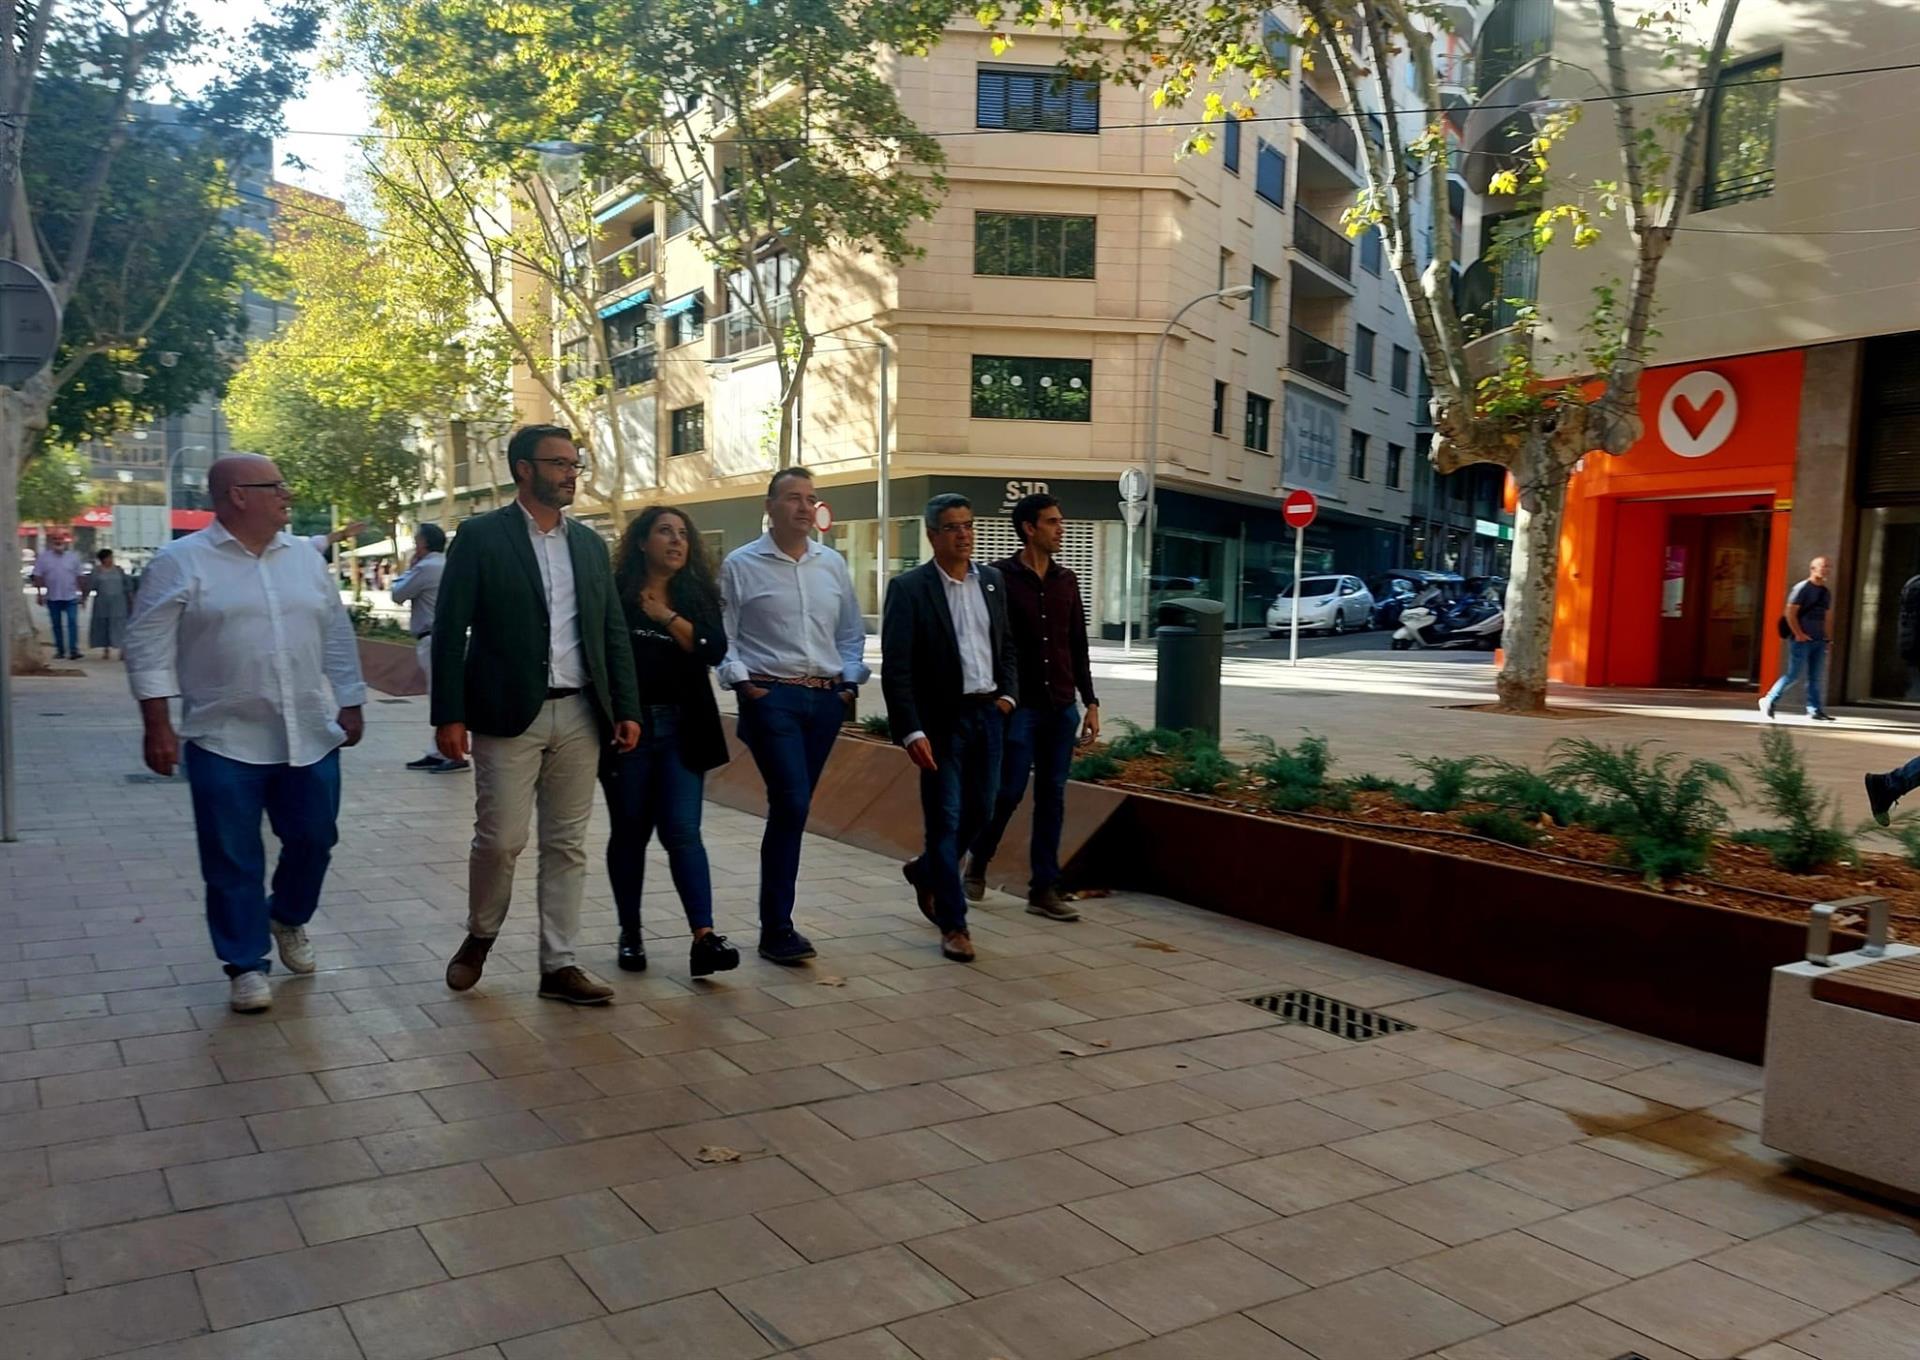 El alcalde de Palma, José Hila, junto a otros miembros del equipo de gobierno visitan Nuredduna, que este sábado se abre al público - AYUNTAMIENTO DE PALMA